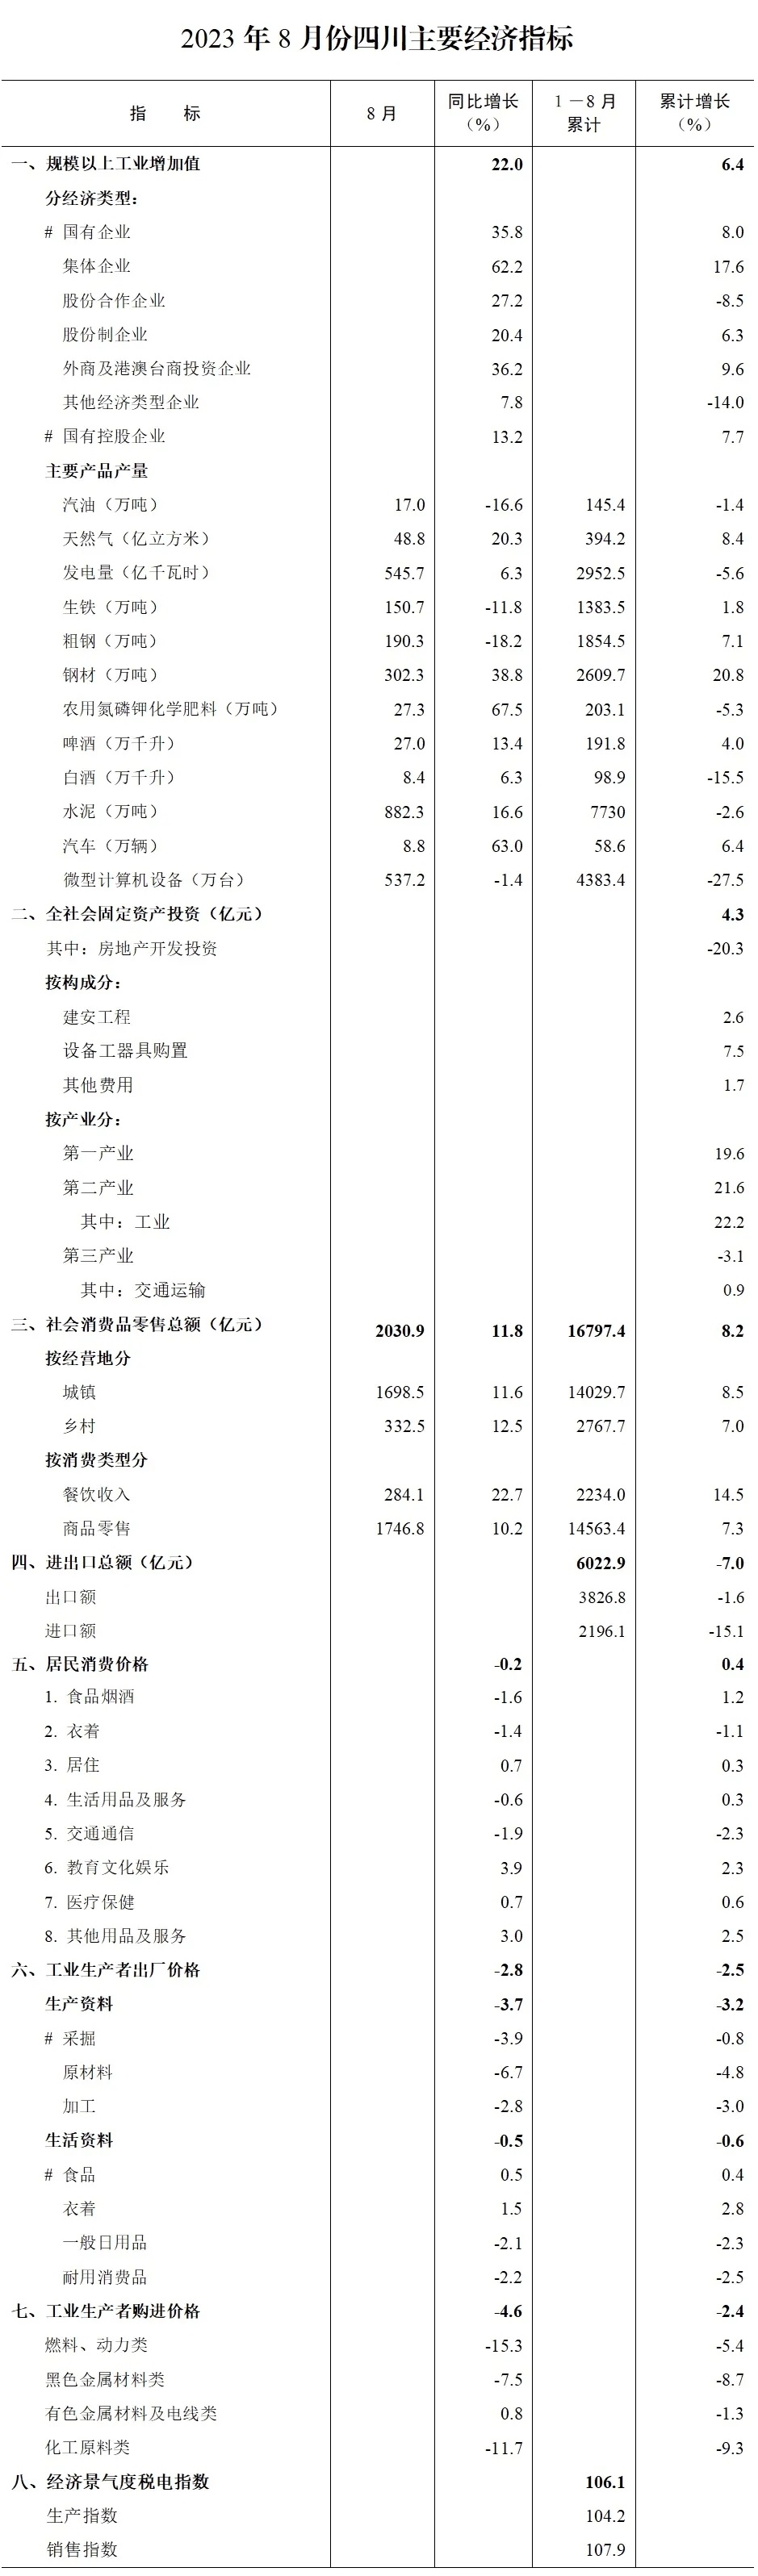 1-8月，四川主要经济指标.JPG